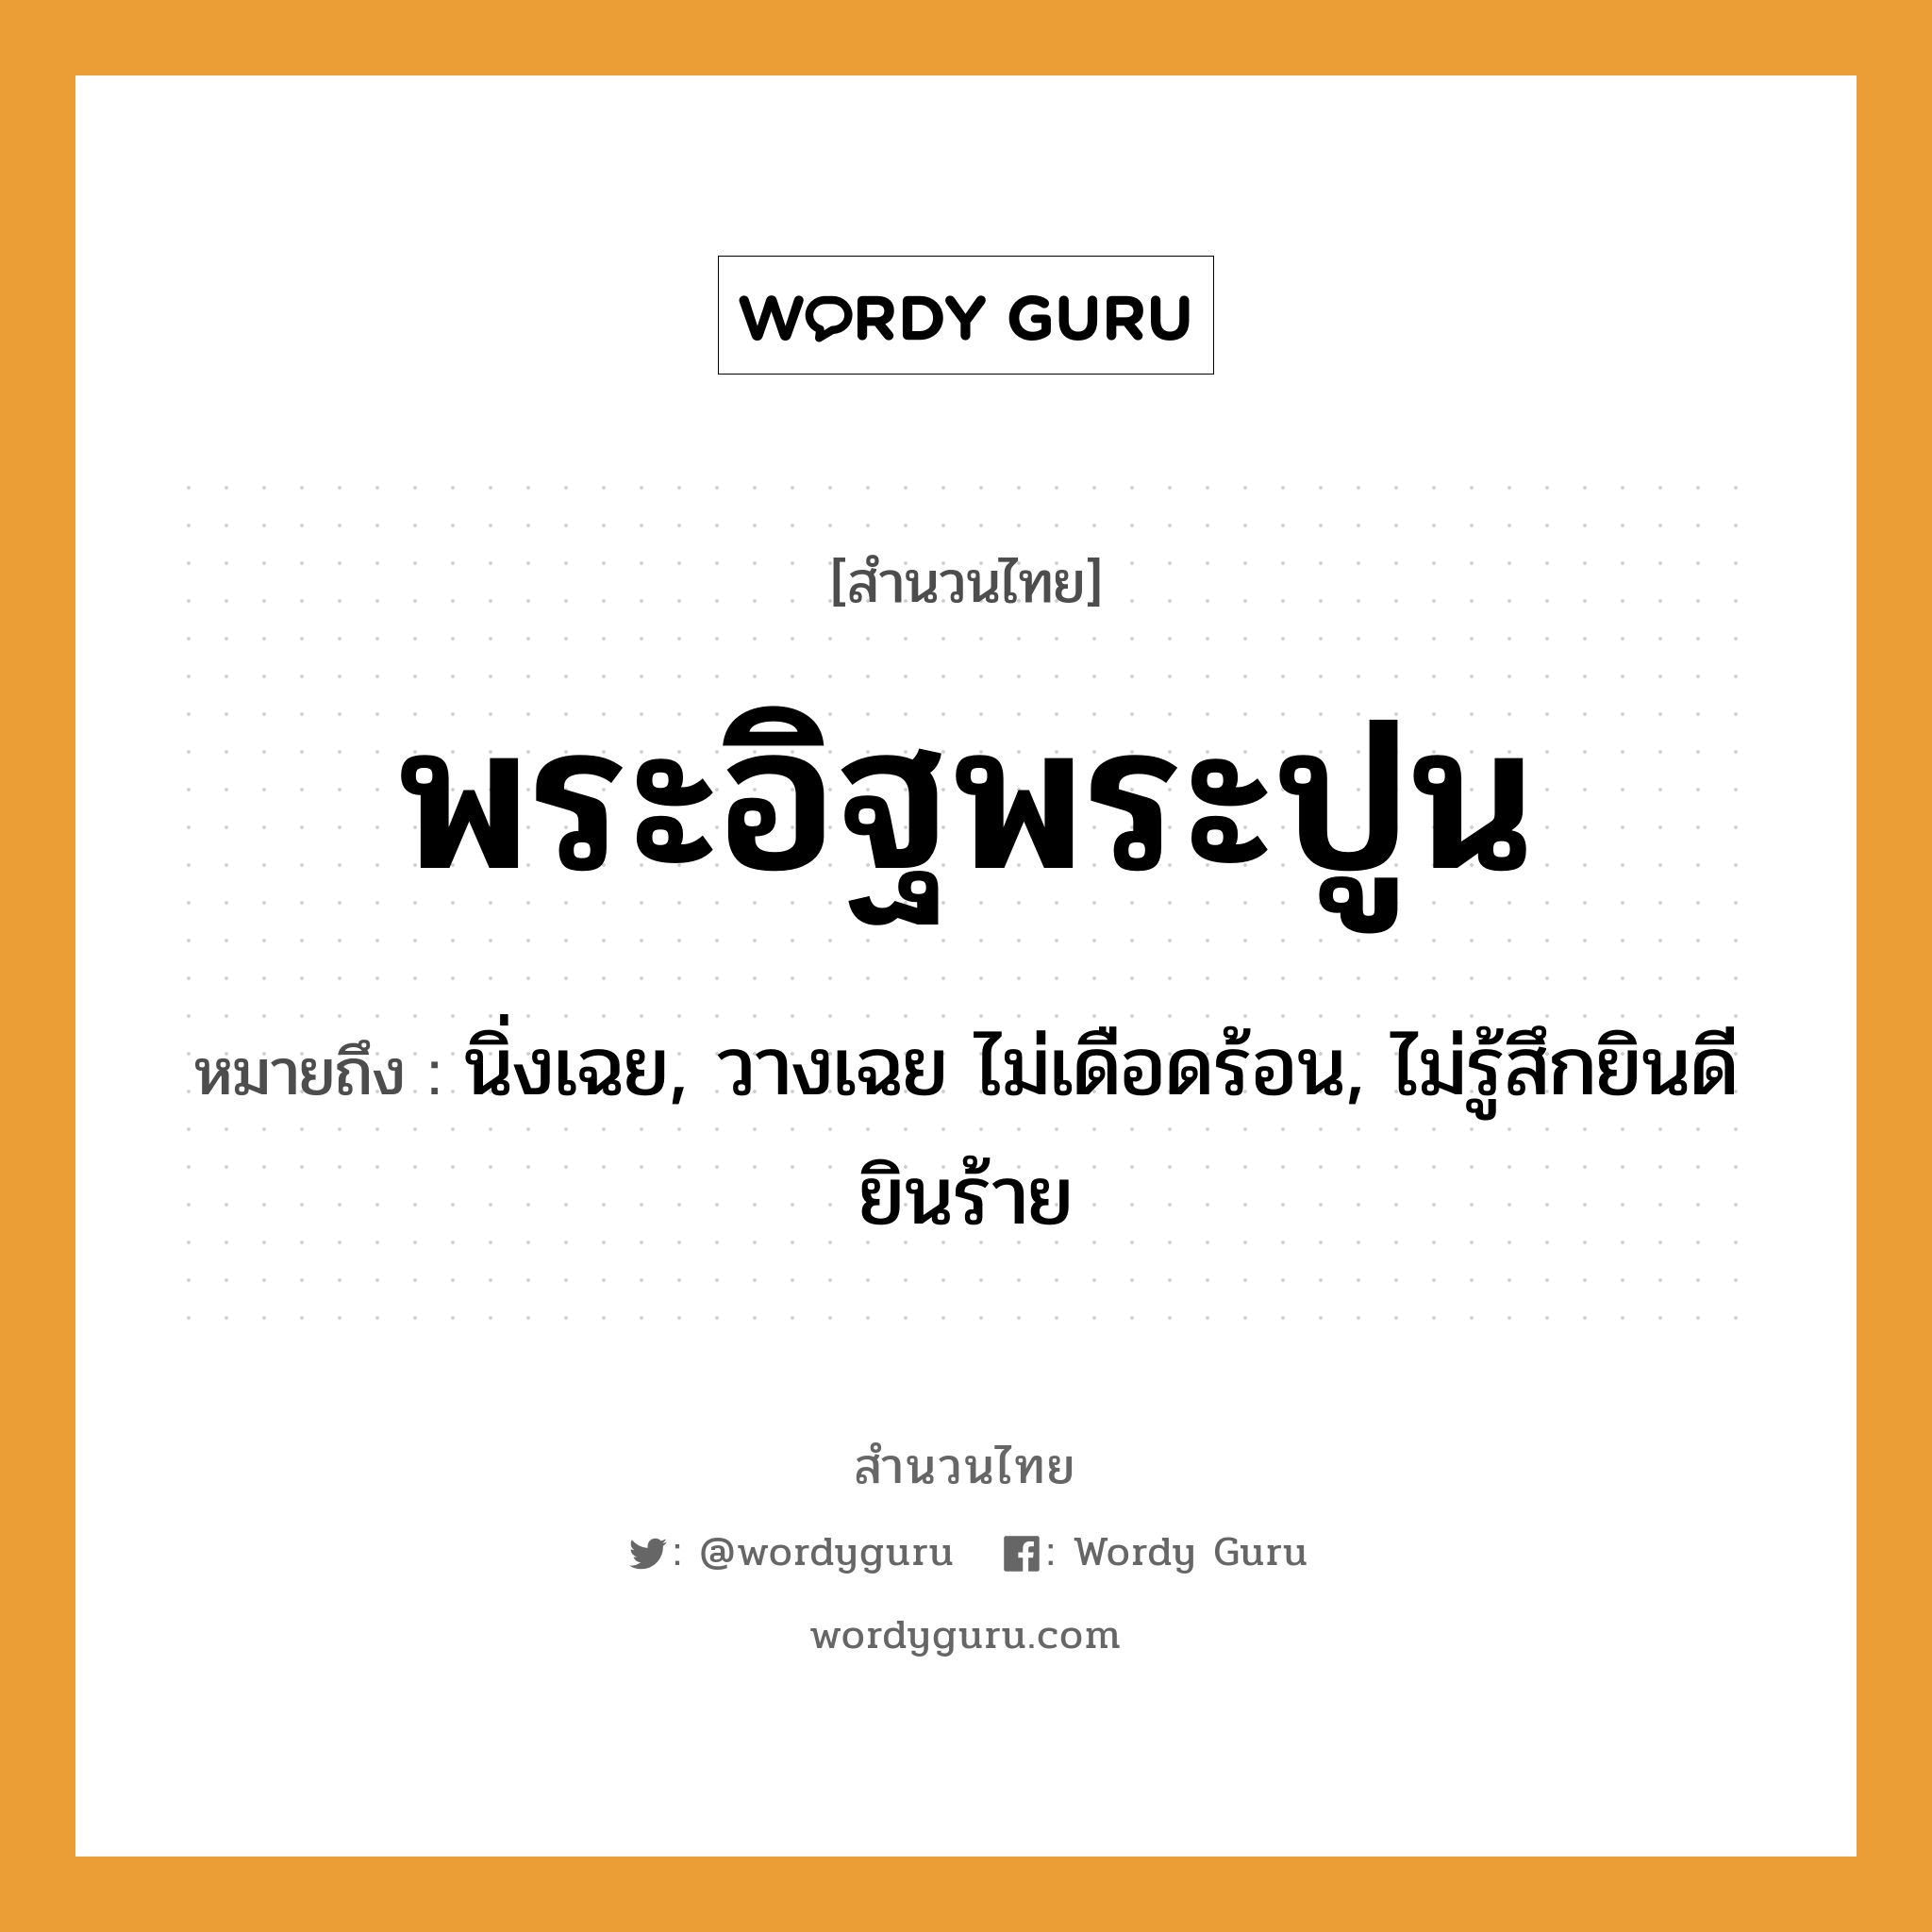 สำนวนไทย: พระอิฐพระปูน หมายถึง?, สํานวนไทย พระอิฐพระปูน หมายถึง นิ่งเฉย, วางเฉย ไม่เดือดร้อน, ไม่รู้สึกยินดียินร้าย